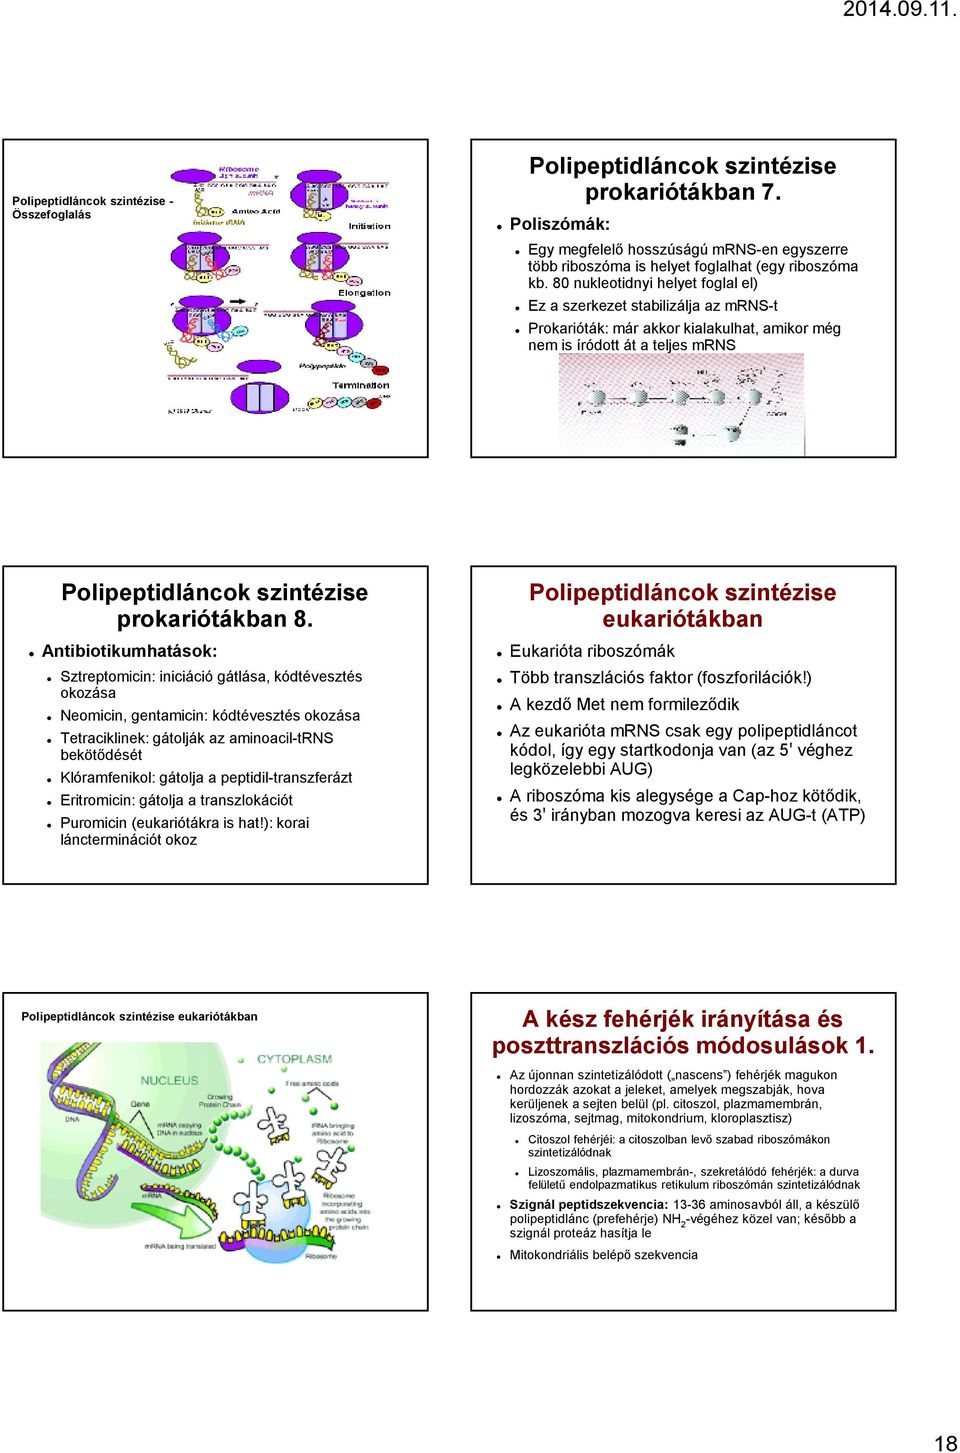 transzlációs riboszóma szerkezet és biogenezis anti aging)